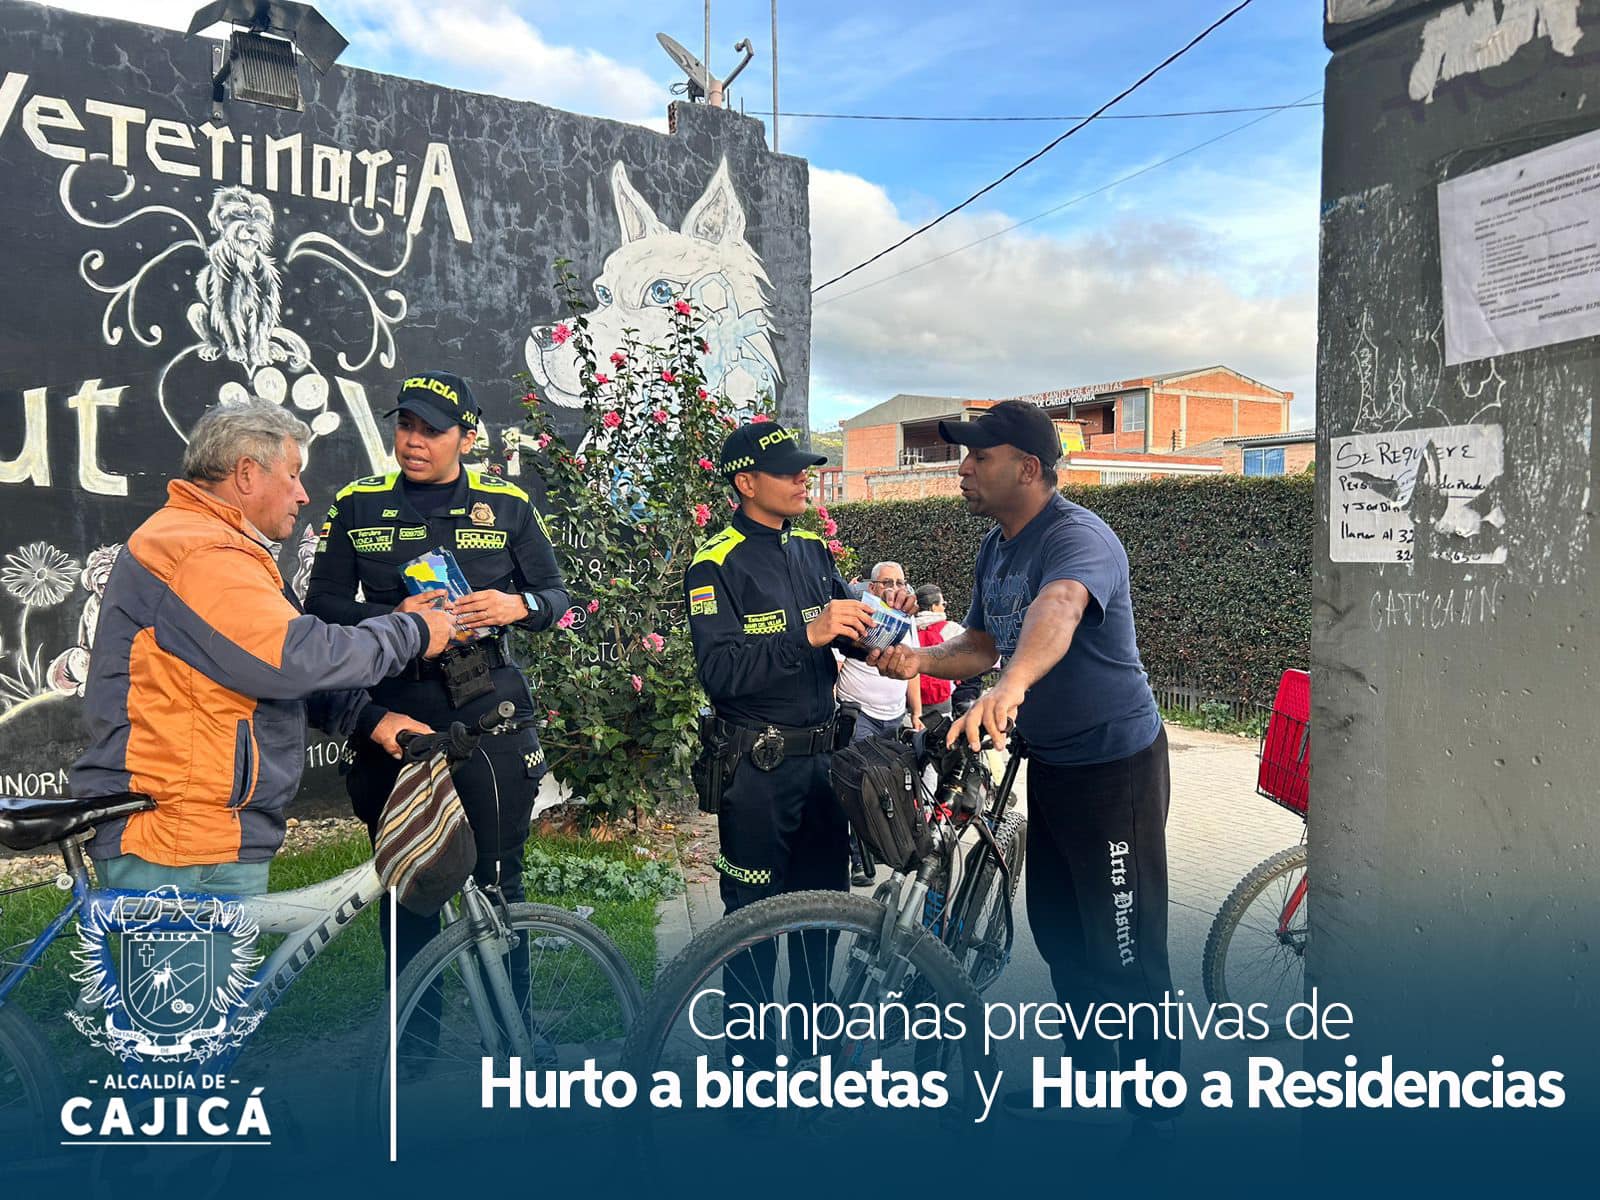 Campañas Preventivas en Cajicá: Hurto a Bicicletas y Residencias